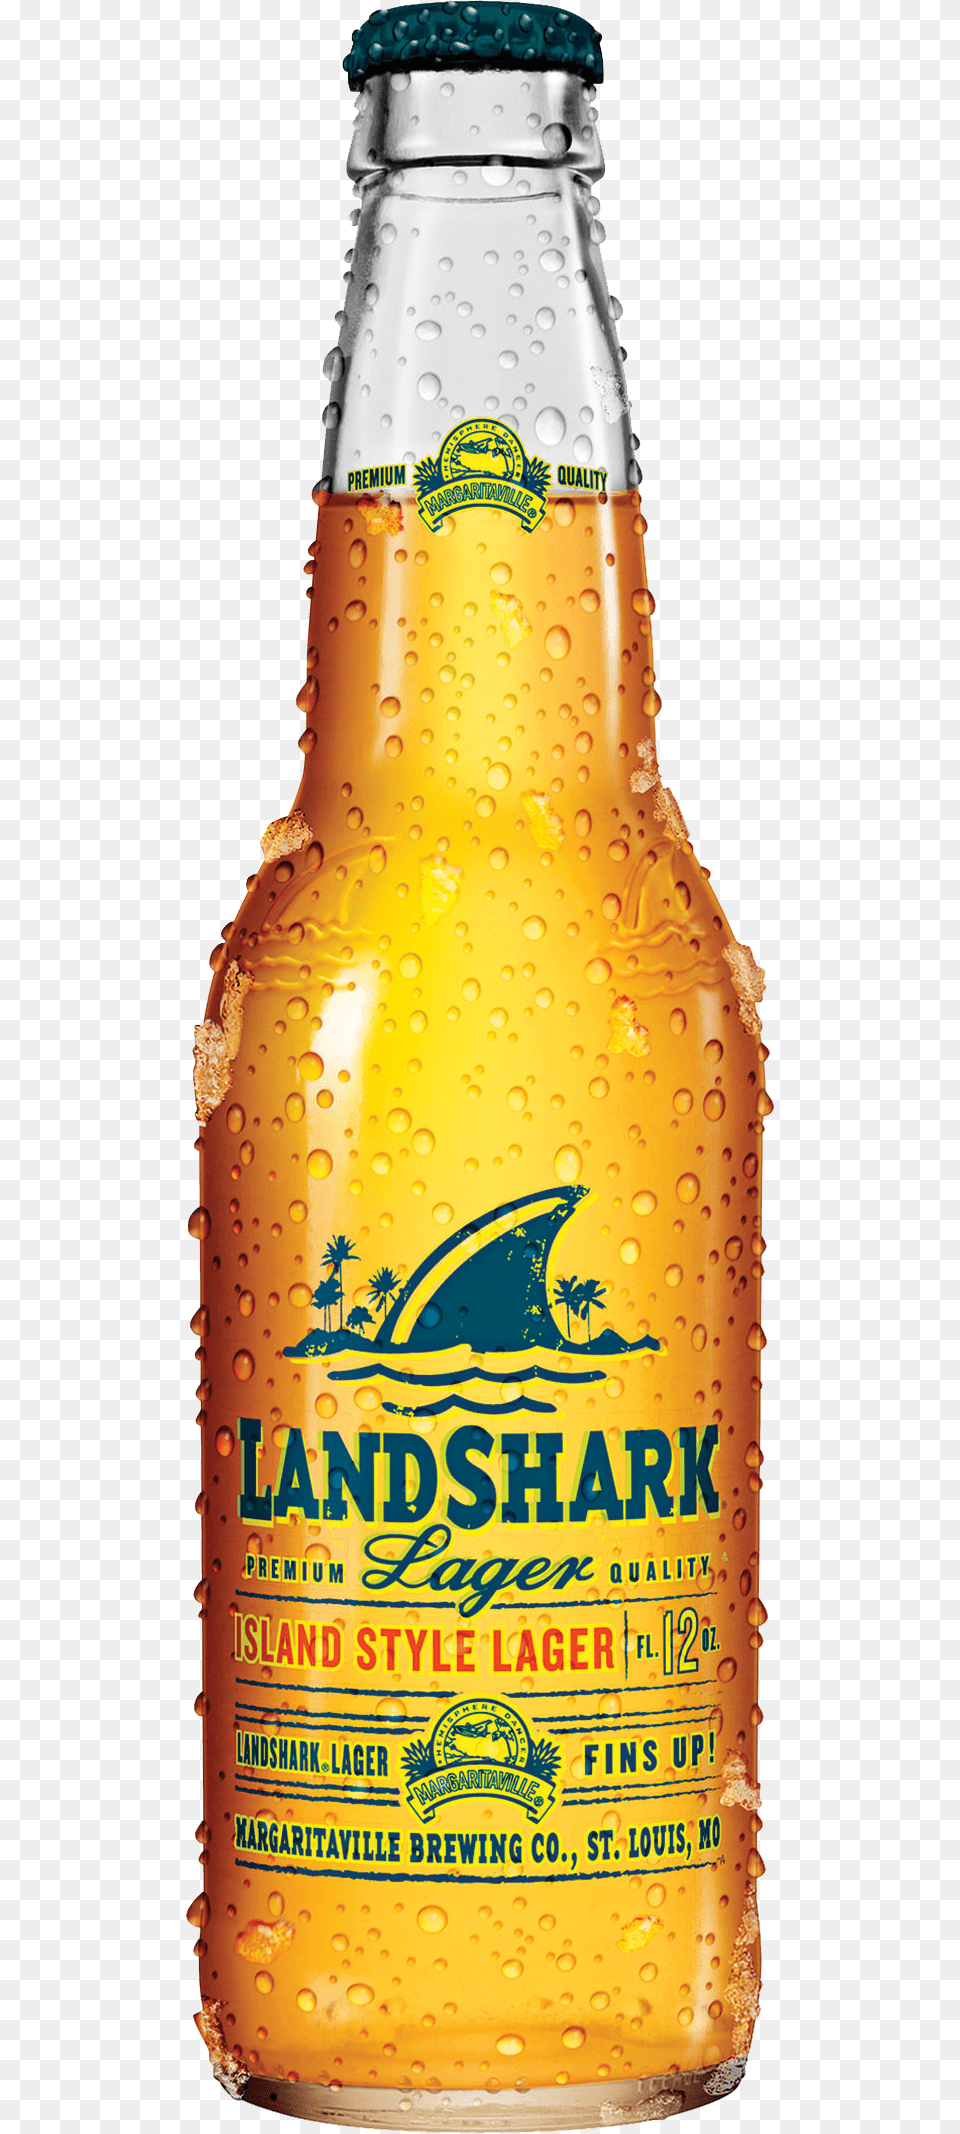 Specialty Beers Land Shark Lager 6 Pk 12 Fl Oz Cans, Alcohol, Beer, Beer Bottle, Beverage Png